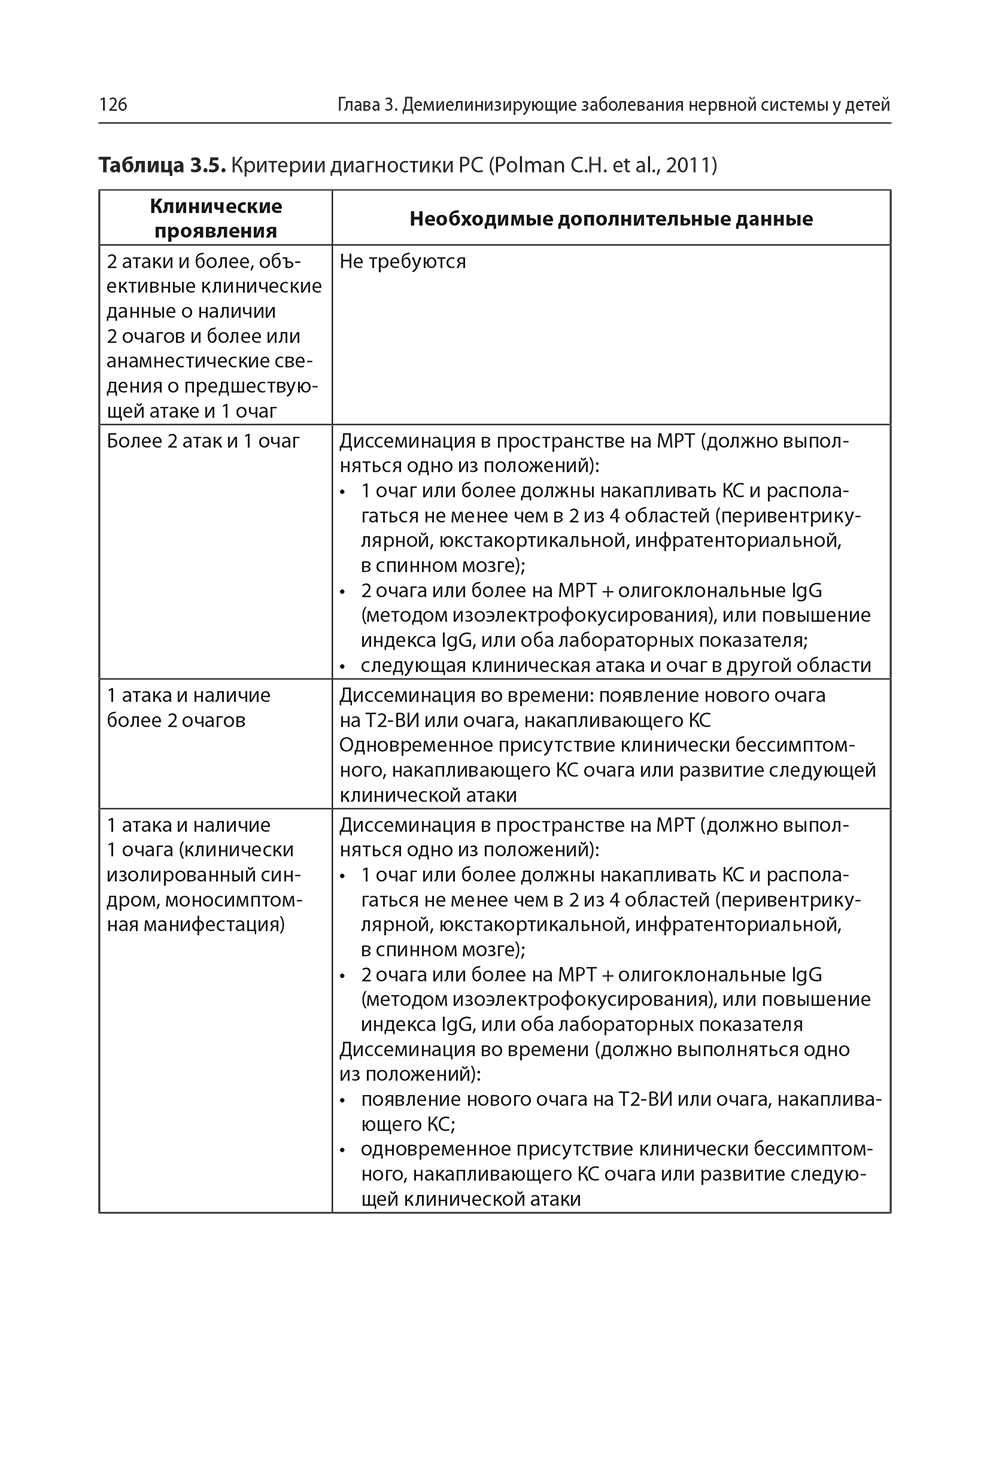 Таблица 3.5. Критерии диагностики PC